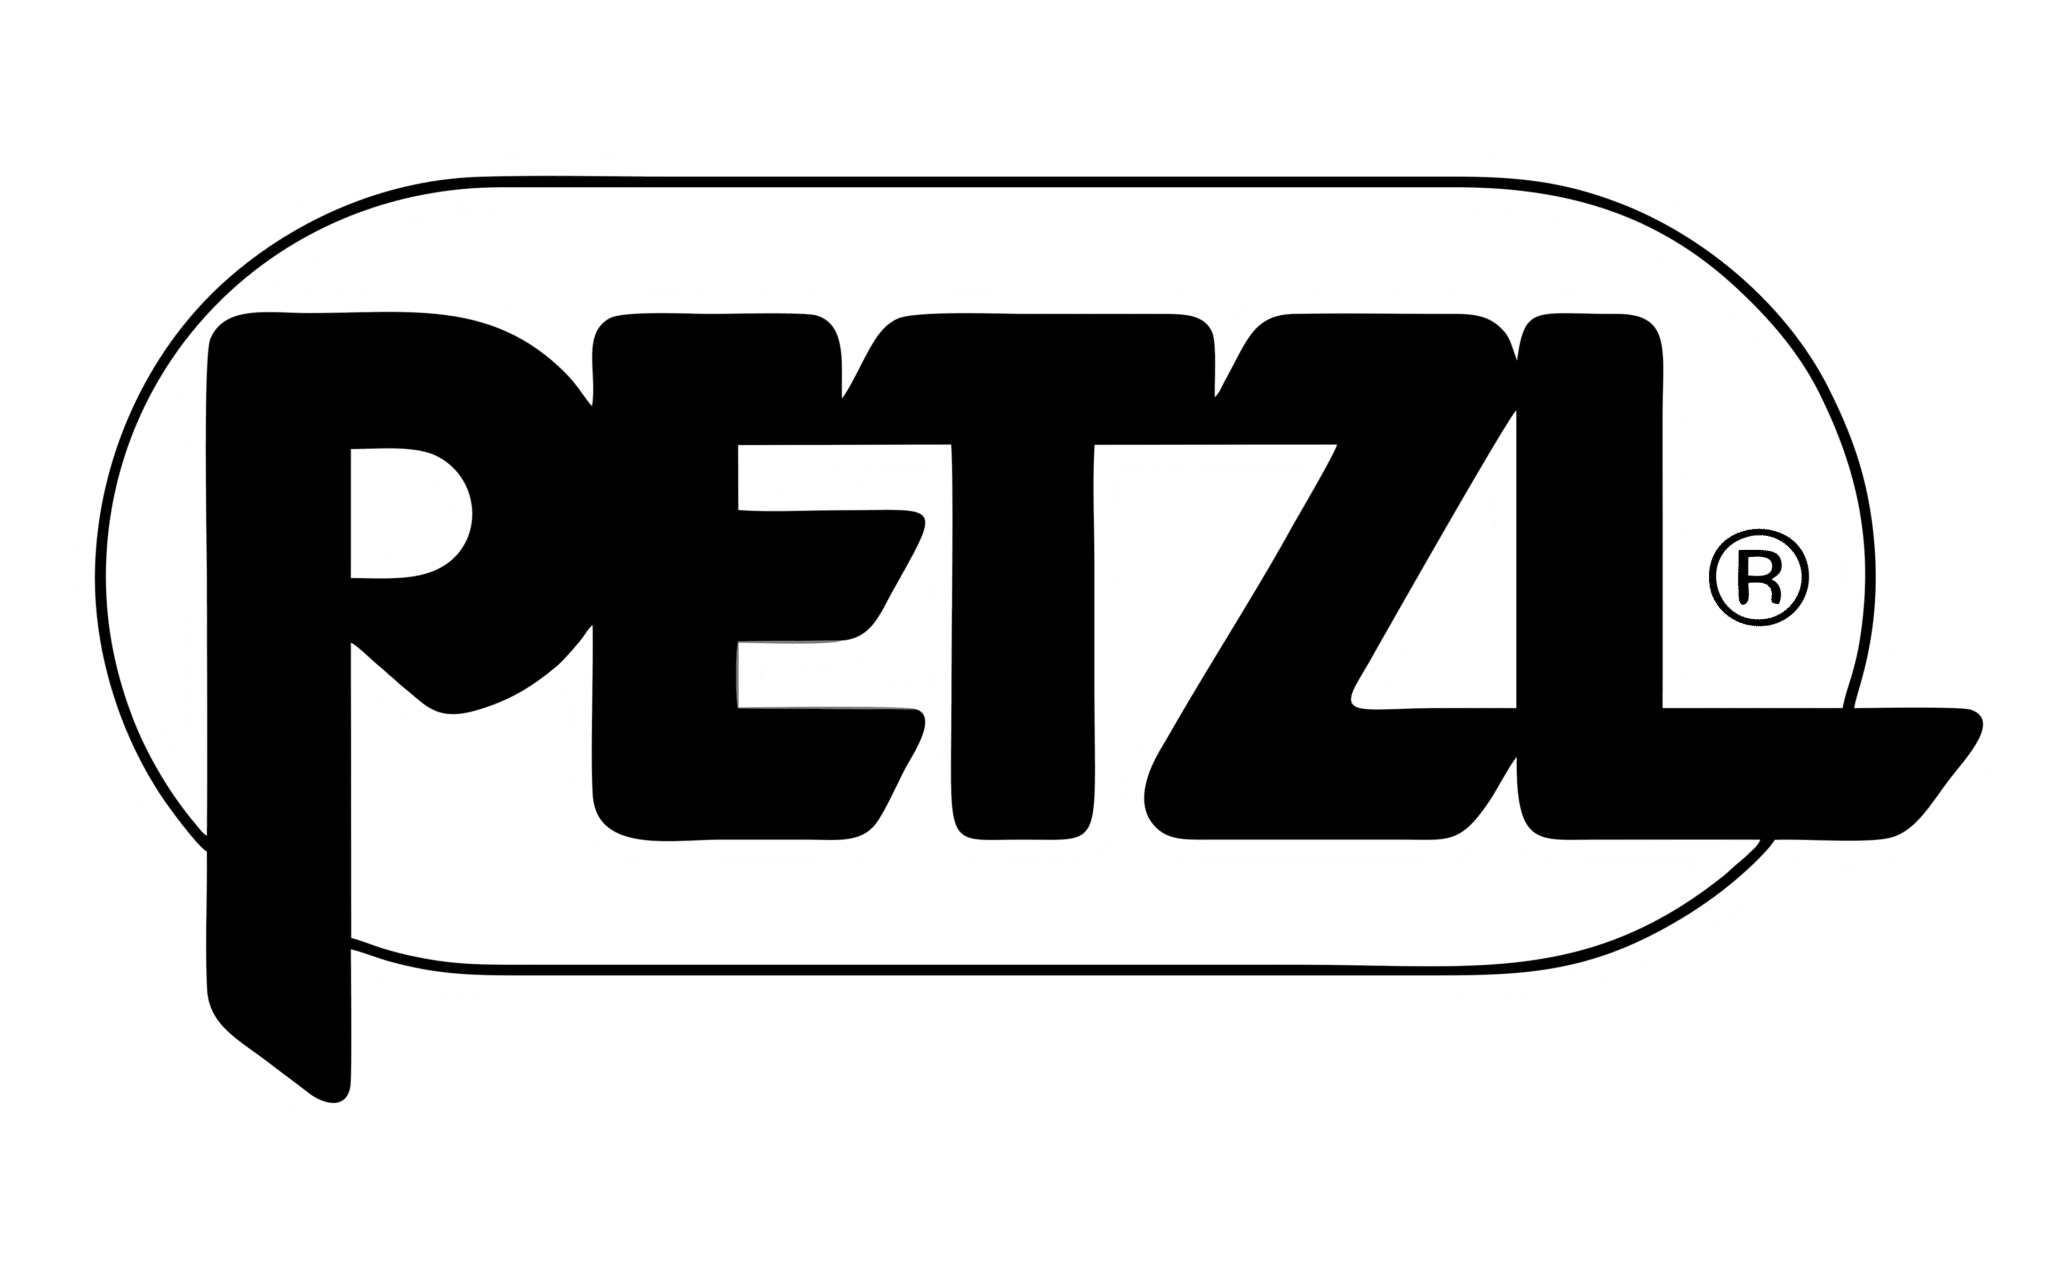 logo de Petzl